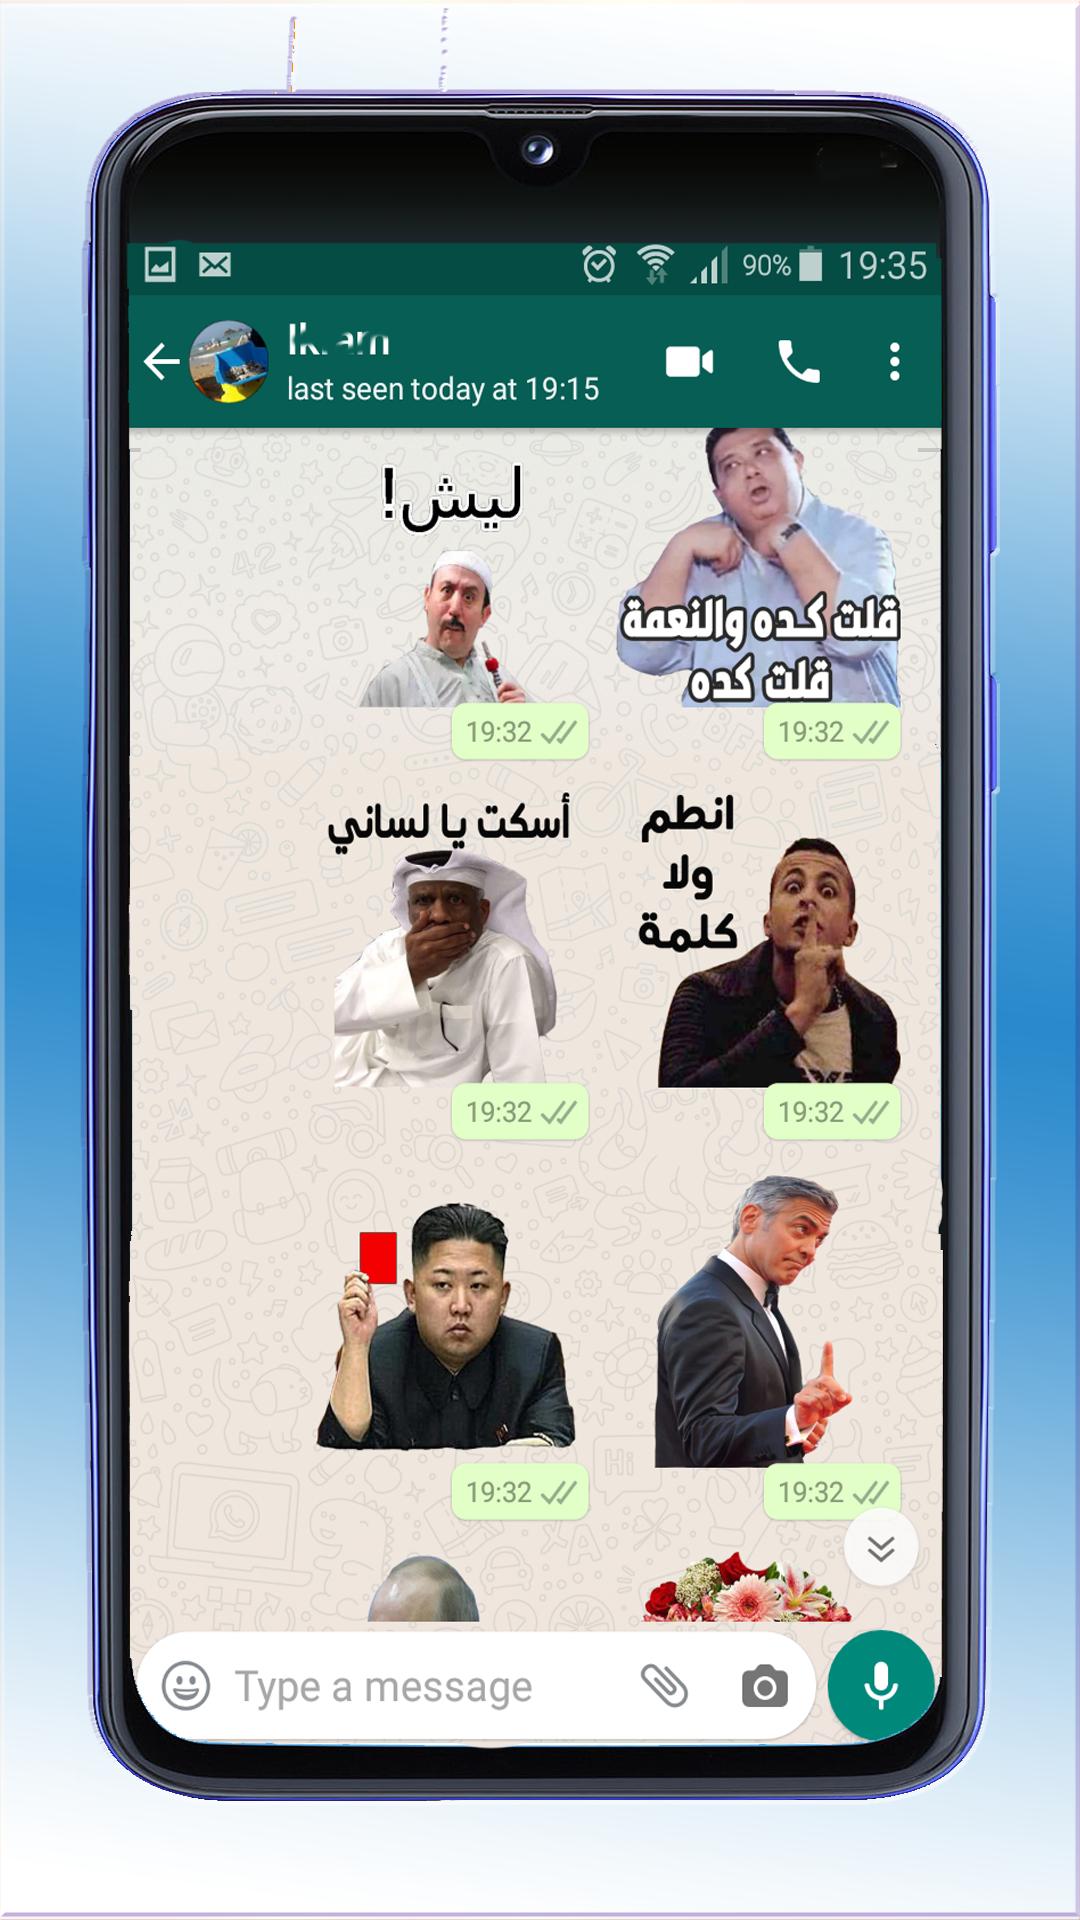 ملصقات عربية مضحكة للواتساب 2020 - WAStickerApps APK untuk Unduhan Android